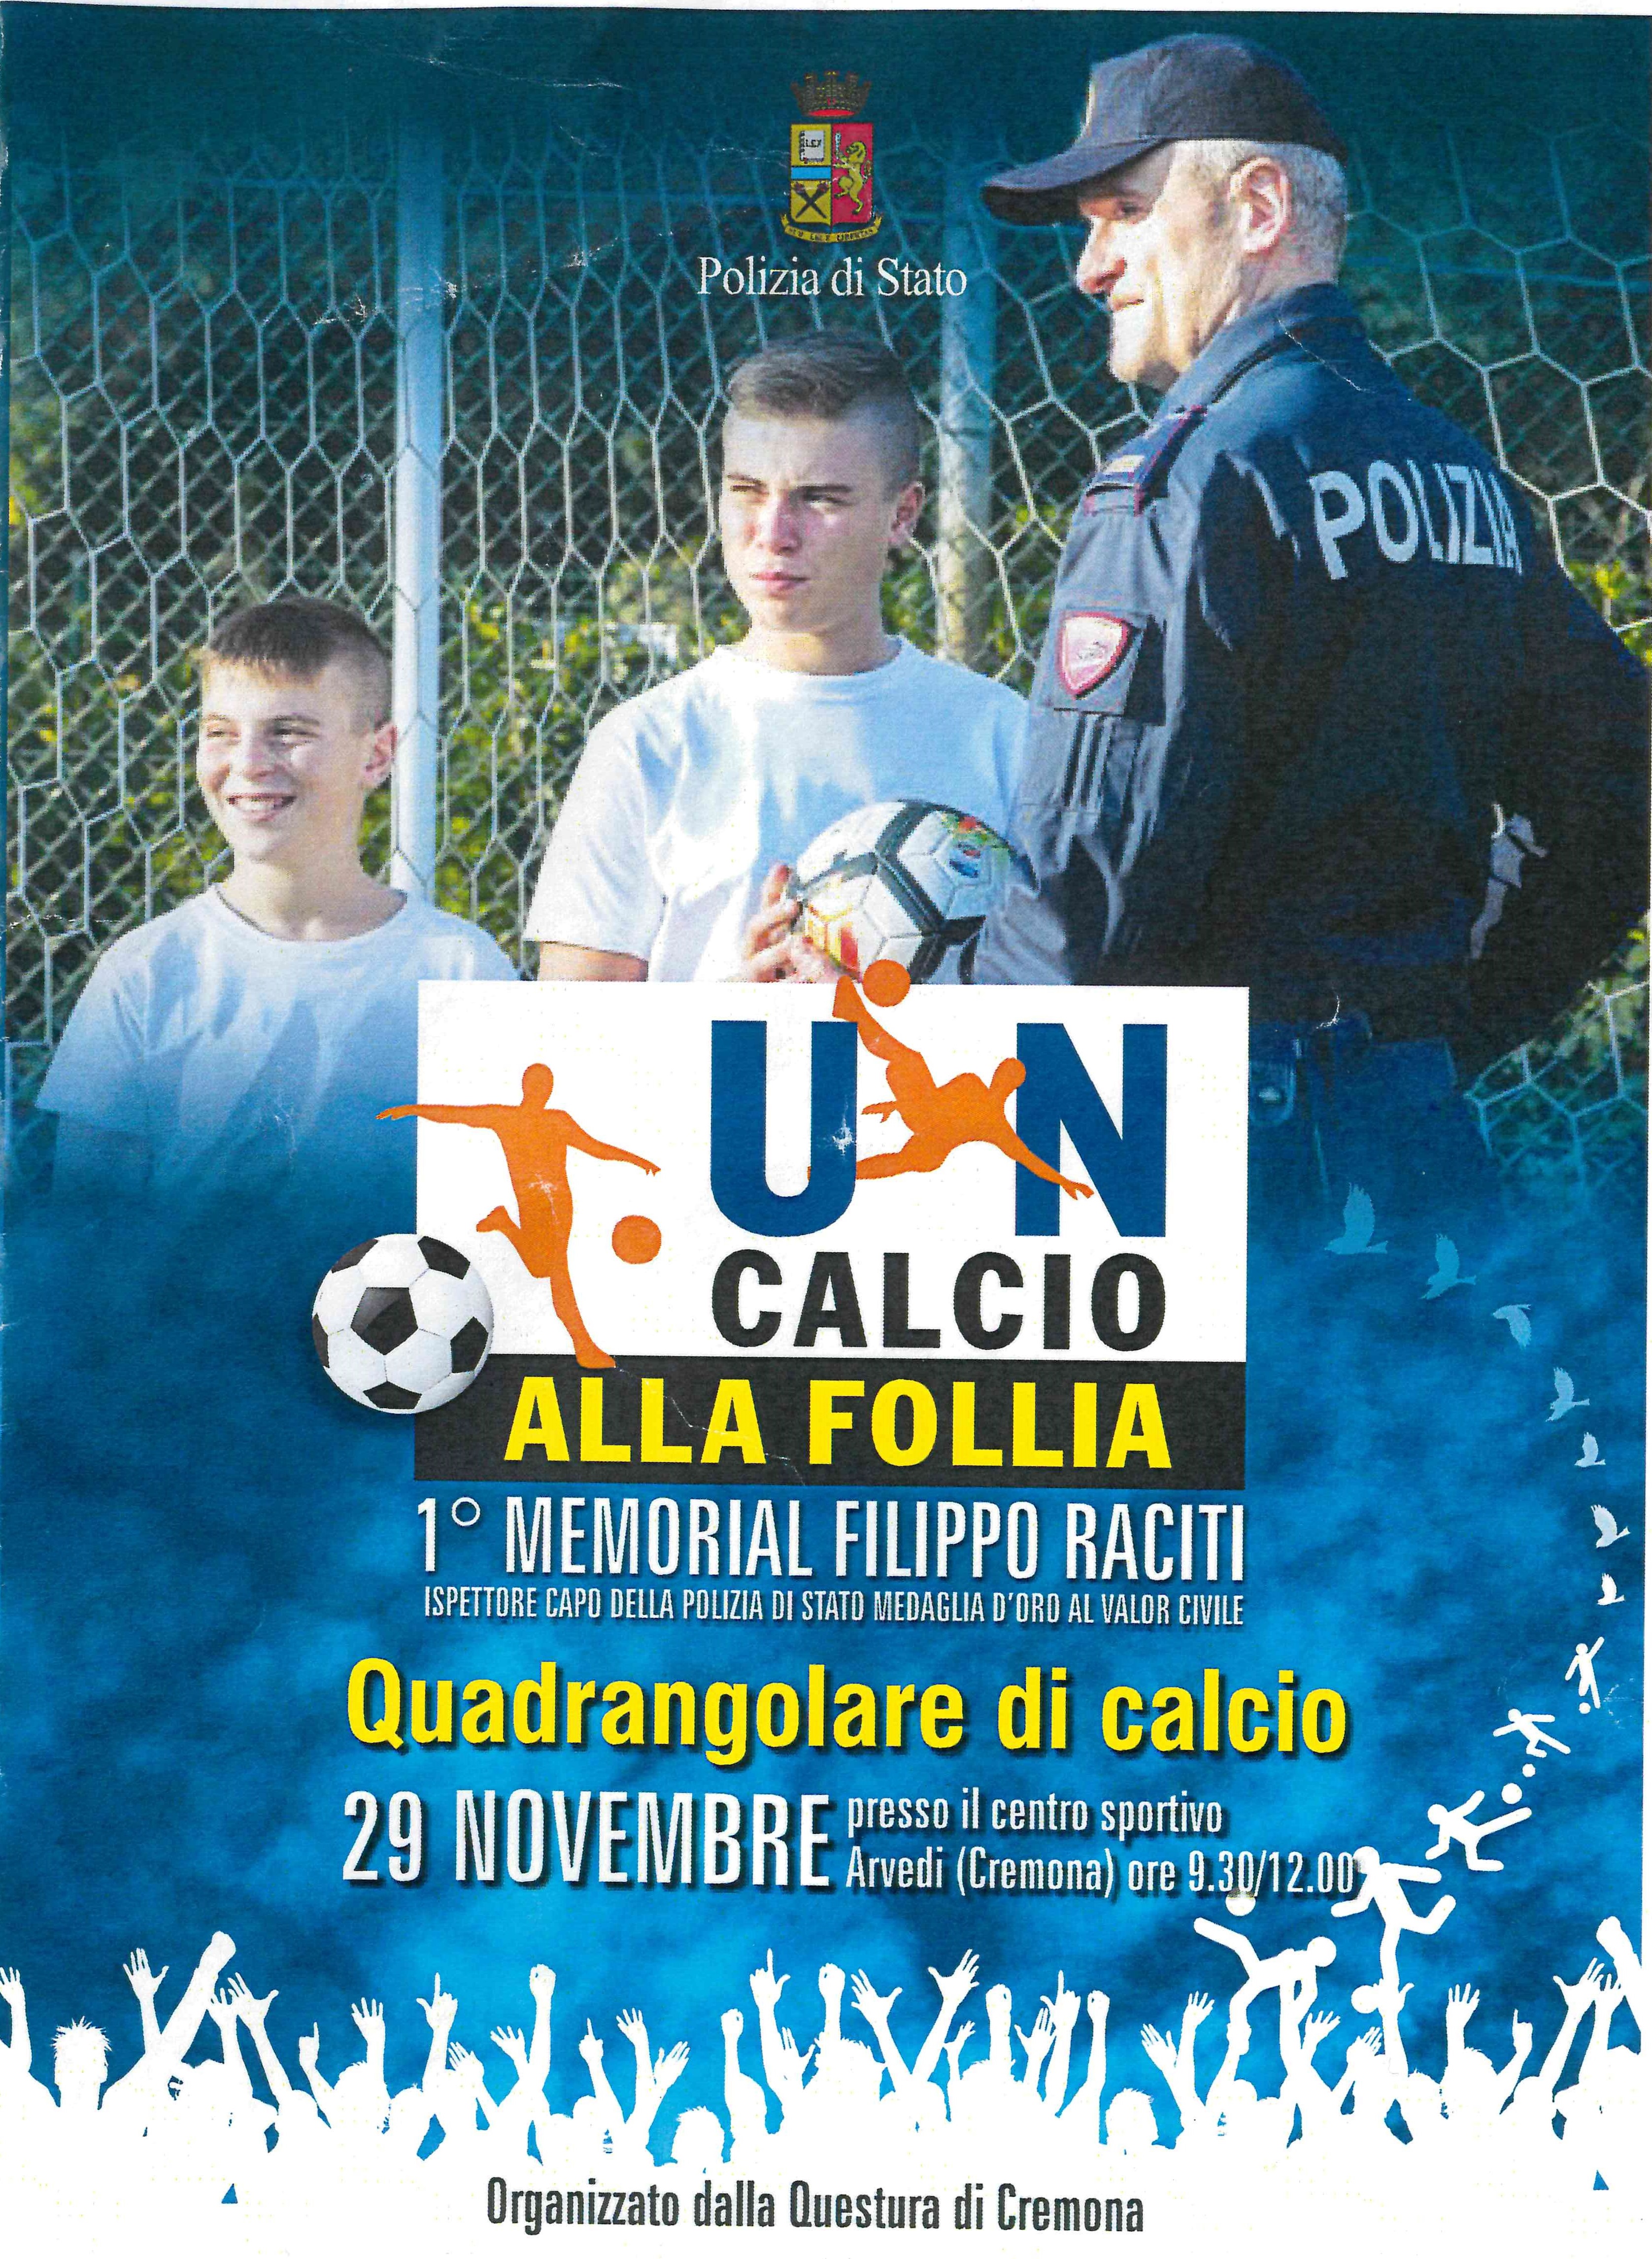 “UN CALCIO ALLA FOLLIA” 1° memorial “FILIPPO RACITI” quadrangolare di calcio